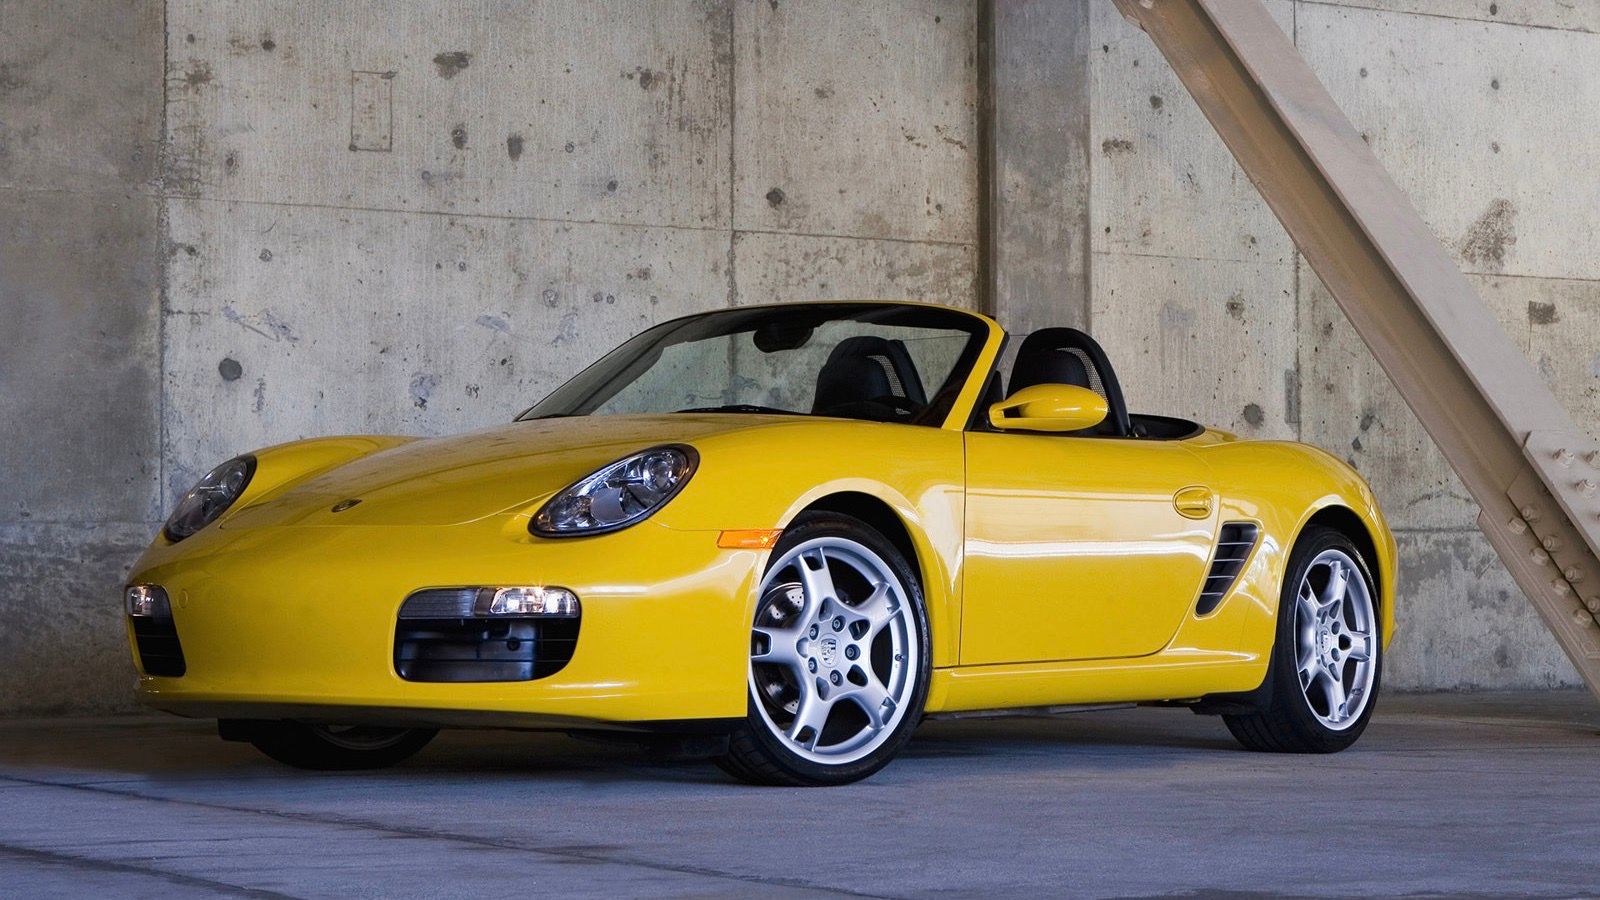 2007 yellow Porsche Boxster 